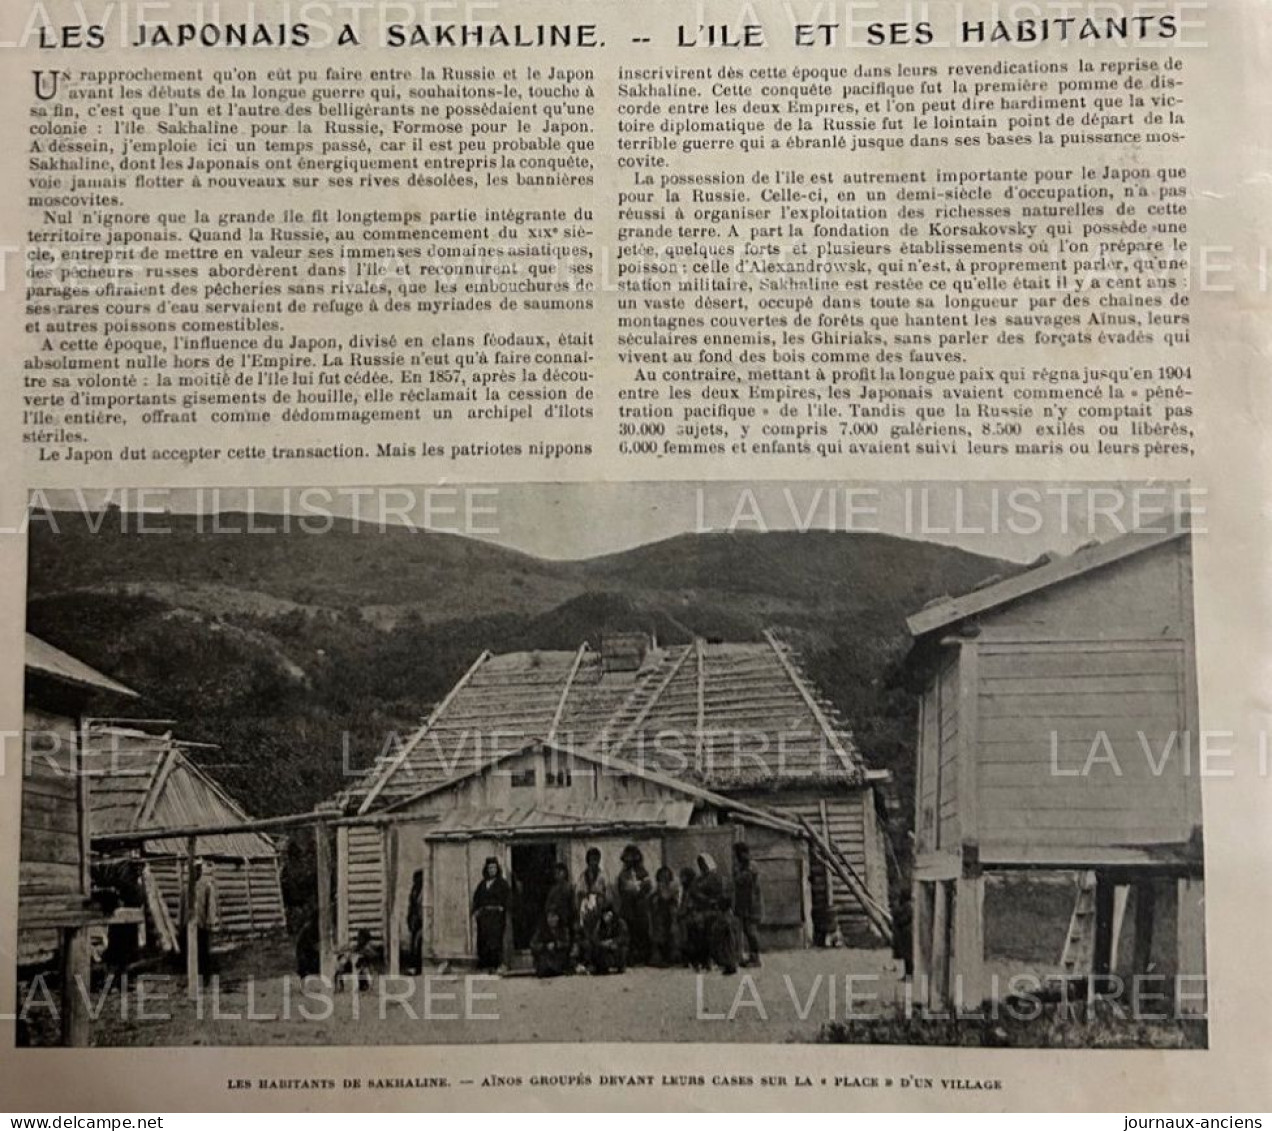 1905 BAGNE D'ALEXANDROVSK - ILE DE SAKHALINE - LES JAPONNAIS A SAKHALINE - LA VIE ILLUSTRÉE - 1900 - 1949